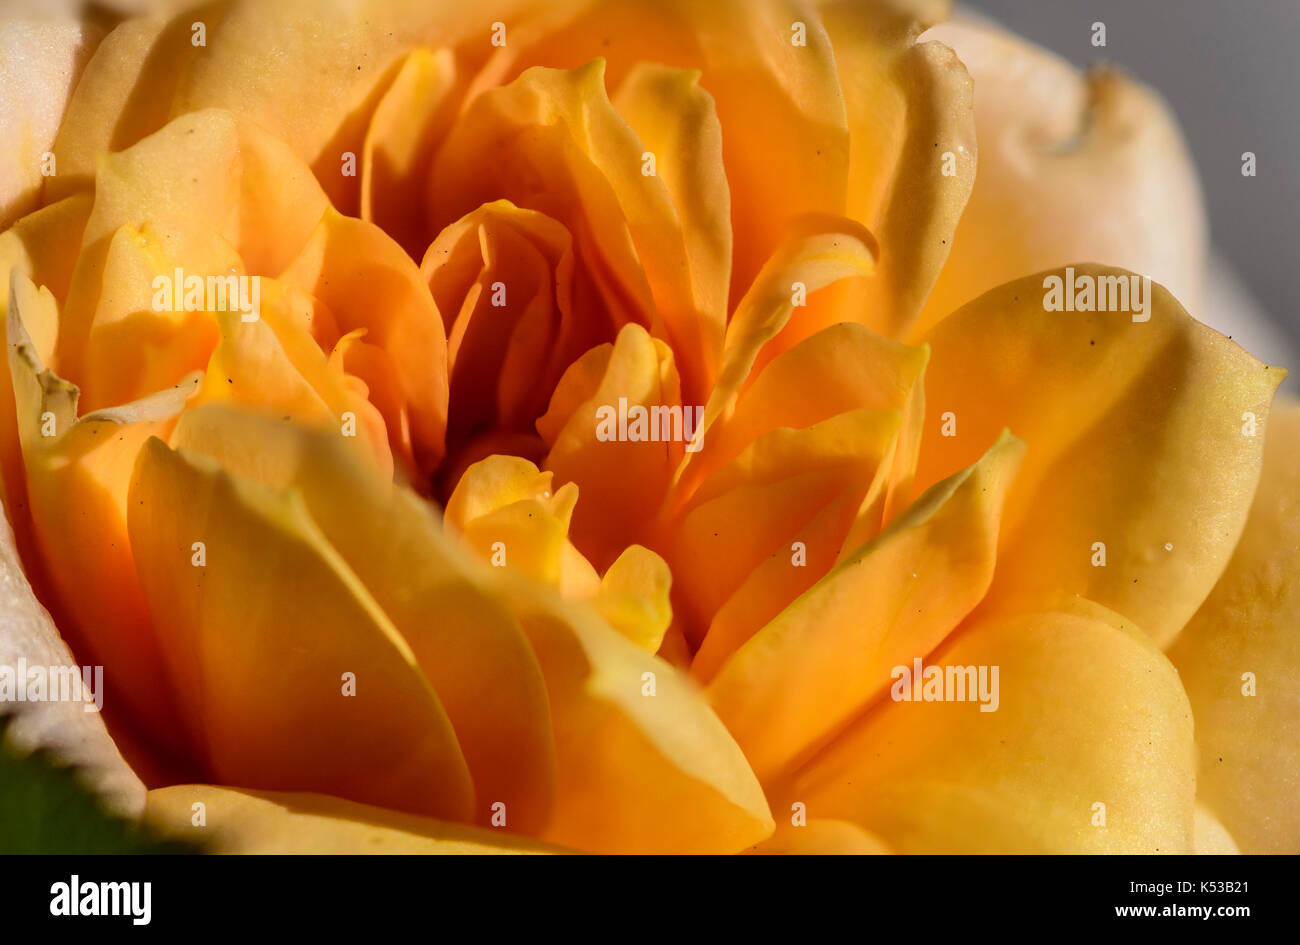 Fotografía de un apilado foco amarillo, naranja y rosa roja flor, macro closeup, mostrando detalles de pétalos y centro Foto de stock